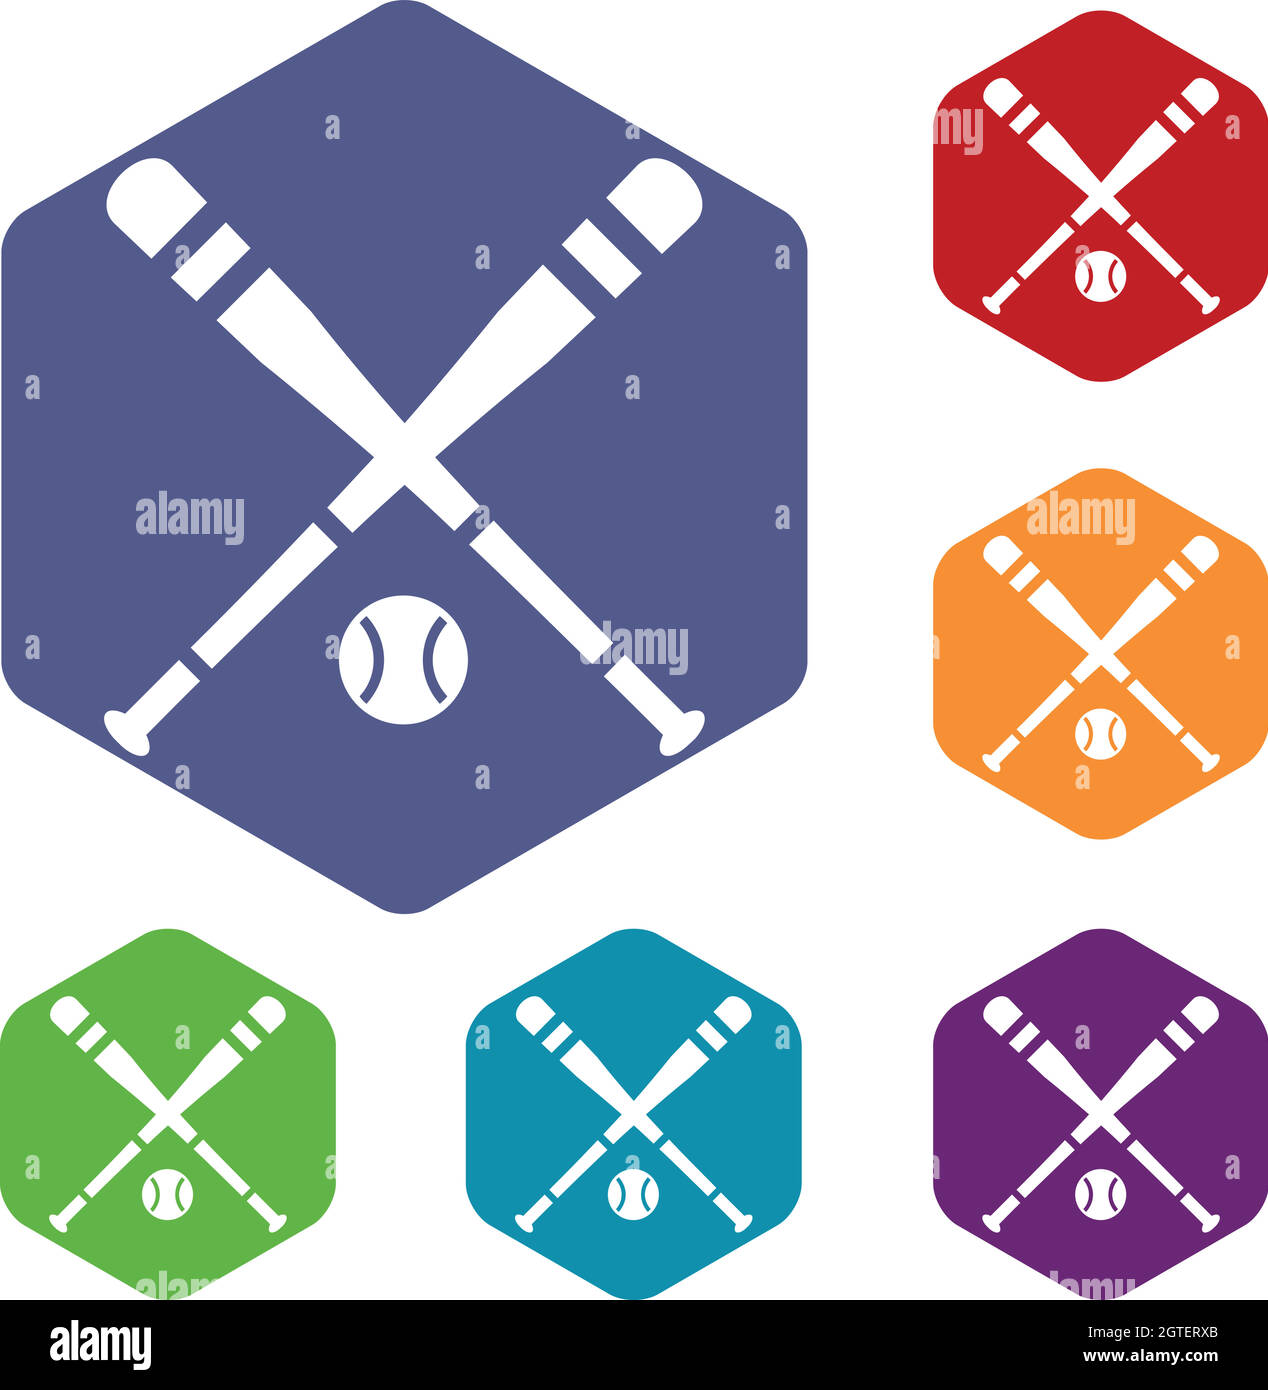 Baseball bat and ball icons set Stock Vector